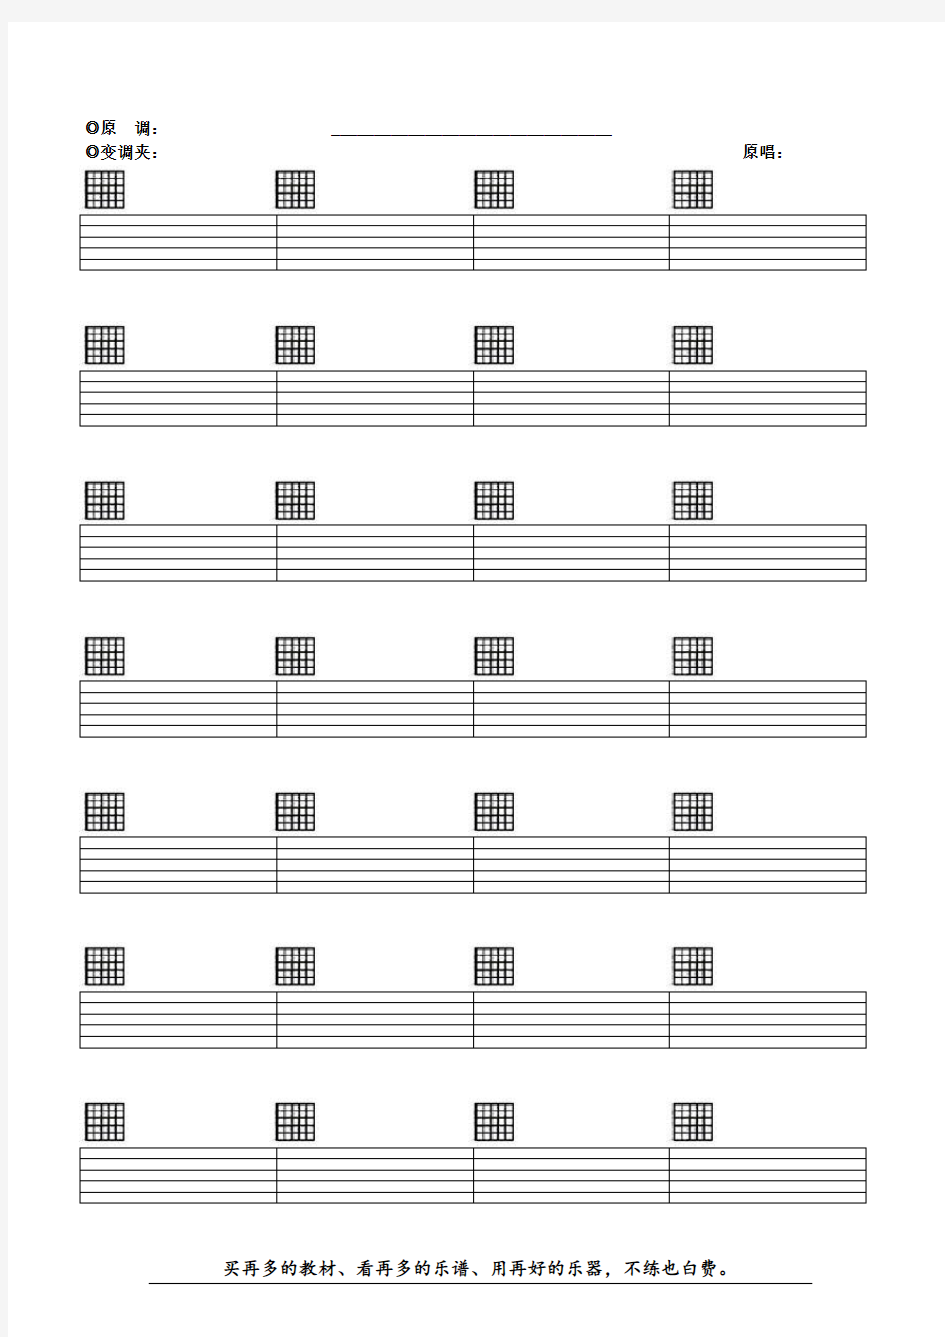 空白六线谱-带和弦-吉他谱纸-Word版本-下载打印即可(完美清晰打印版)